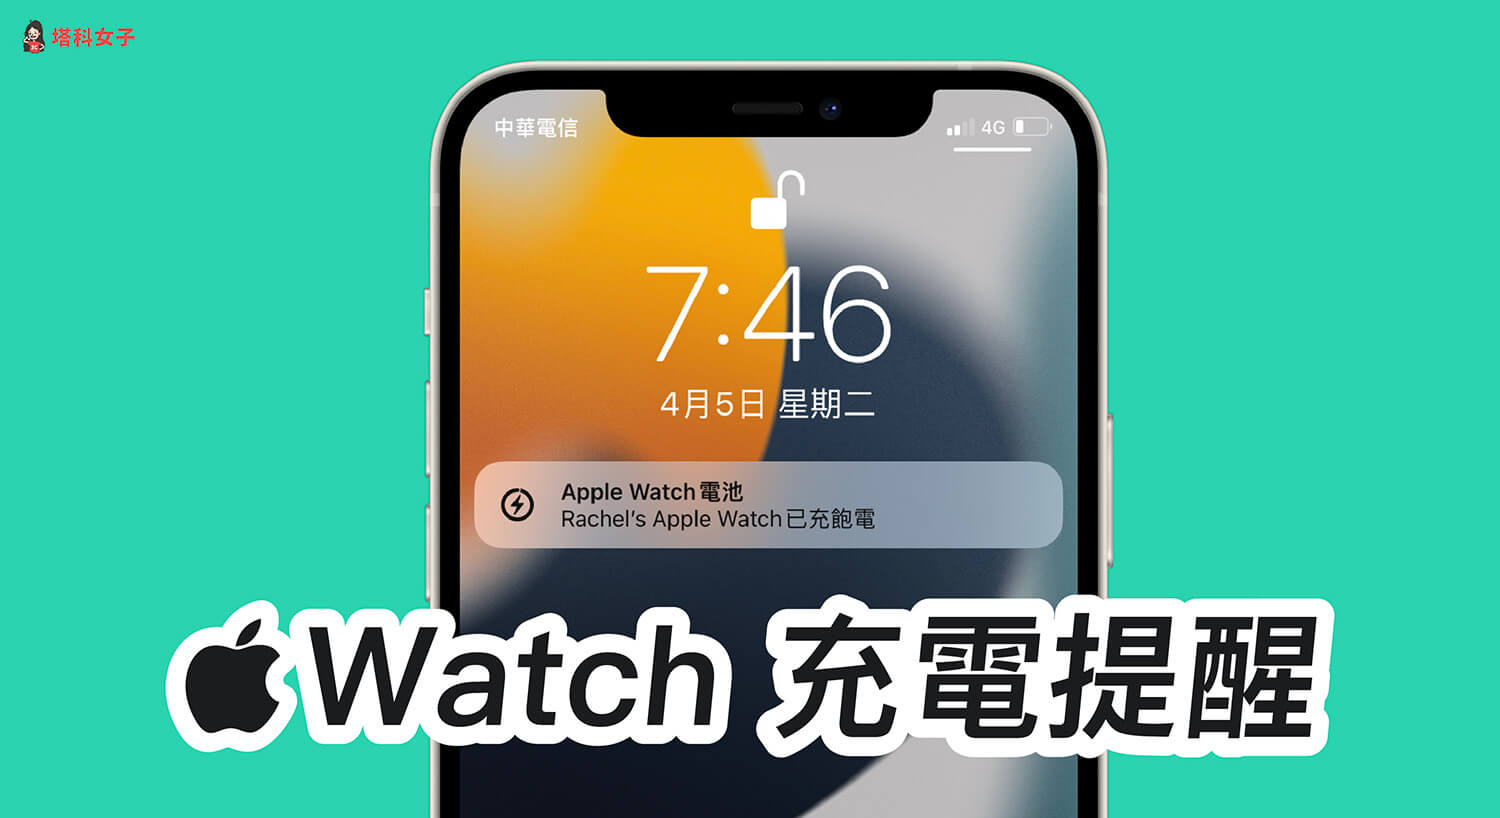 Apple Watch 充電提醒怎麼開？即時提醒充電並接收已充飽電通知